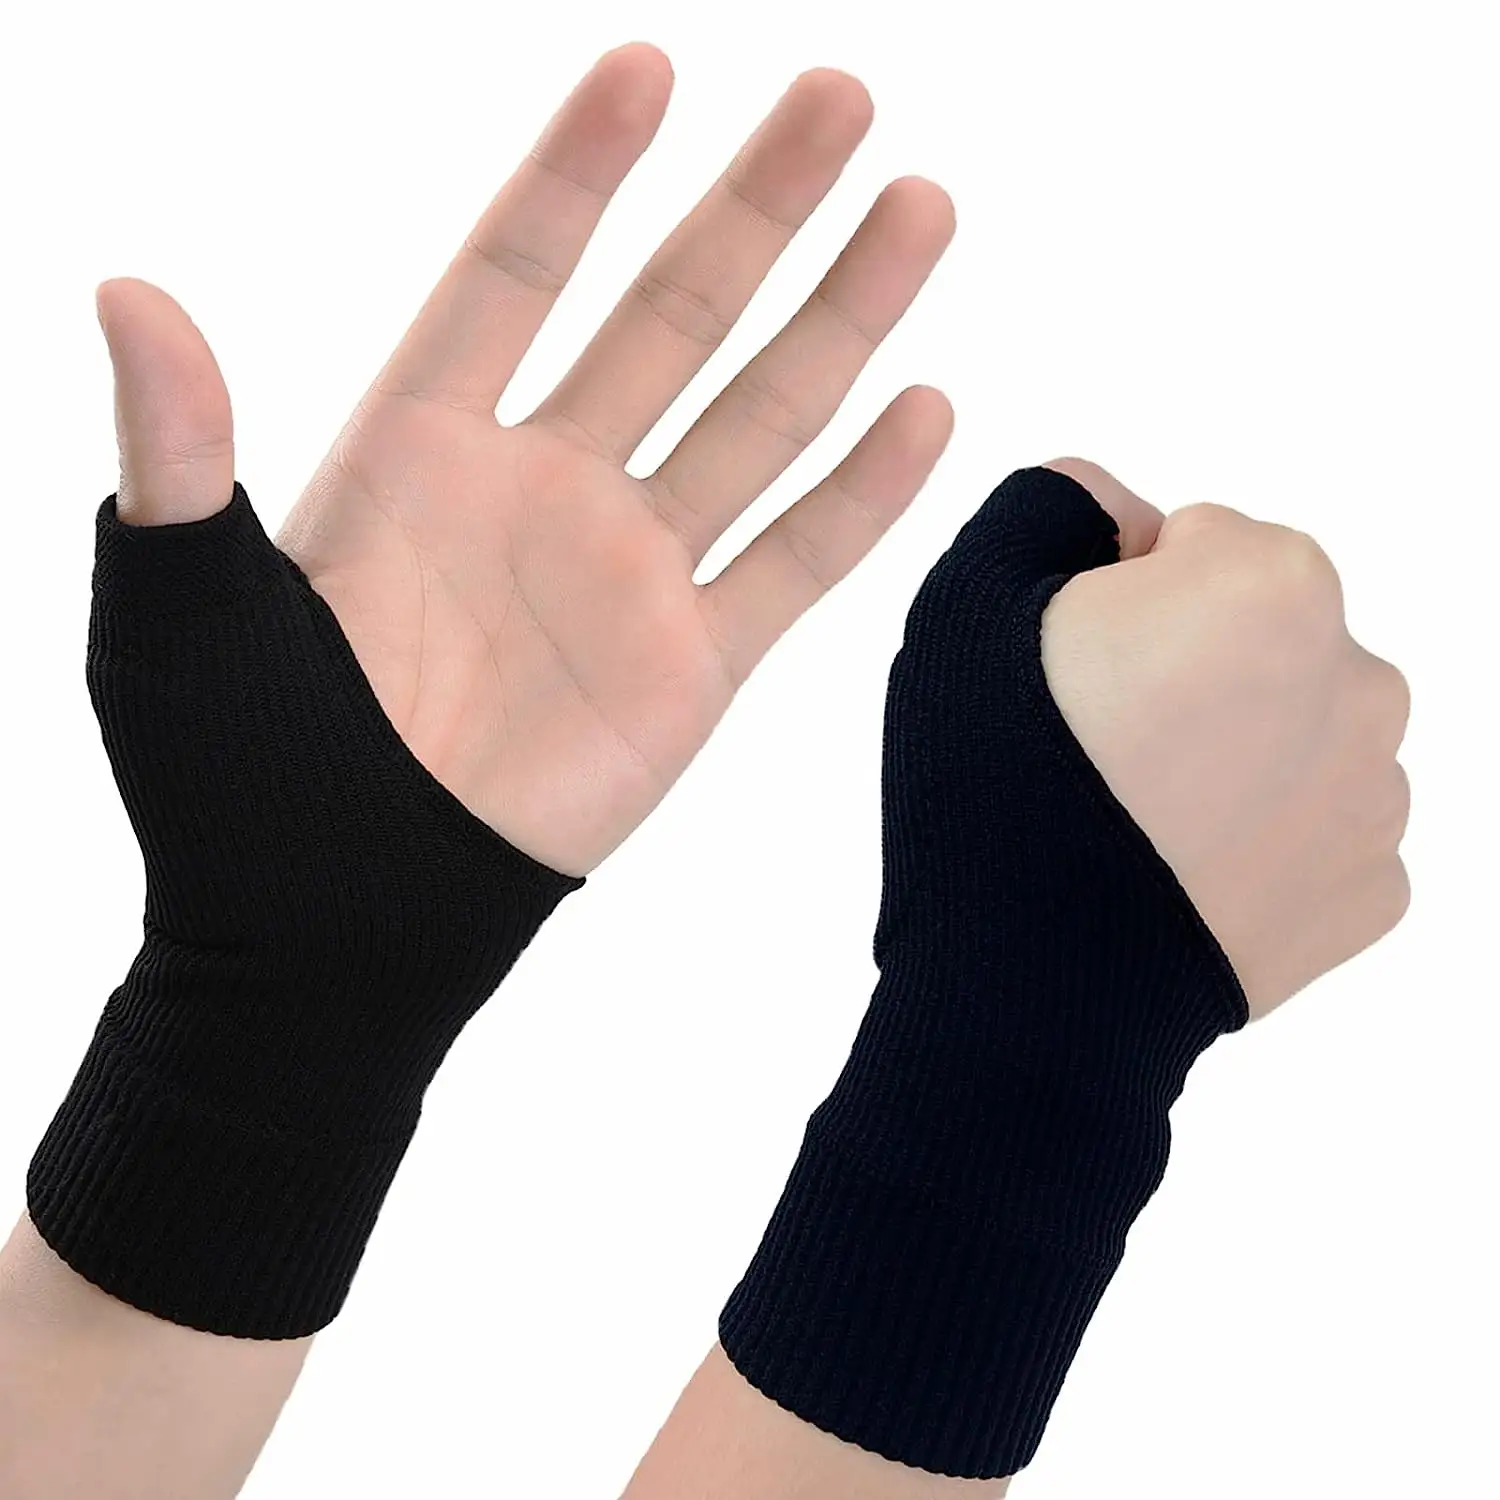 Polso pollice artrite maniche elastiche a compressione senza dita con cuscinetto in gel per artrite compressione traspirante glo